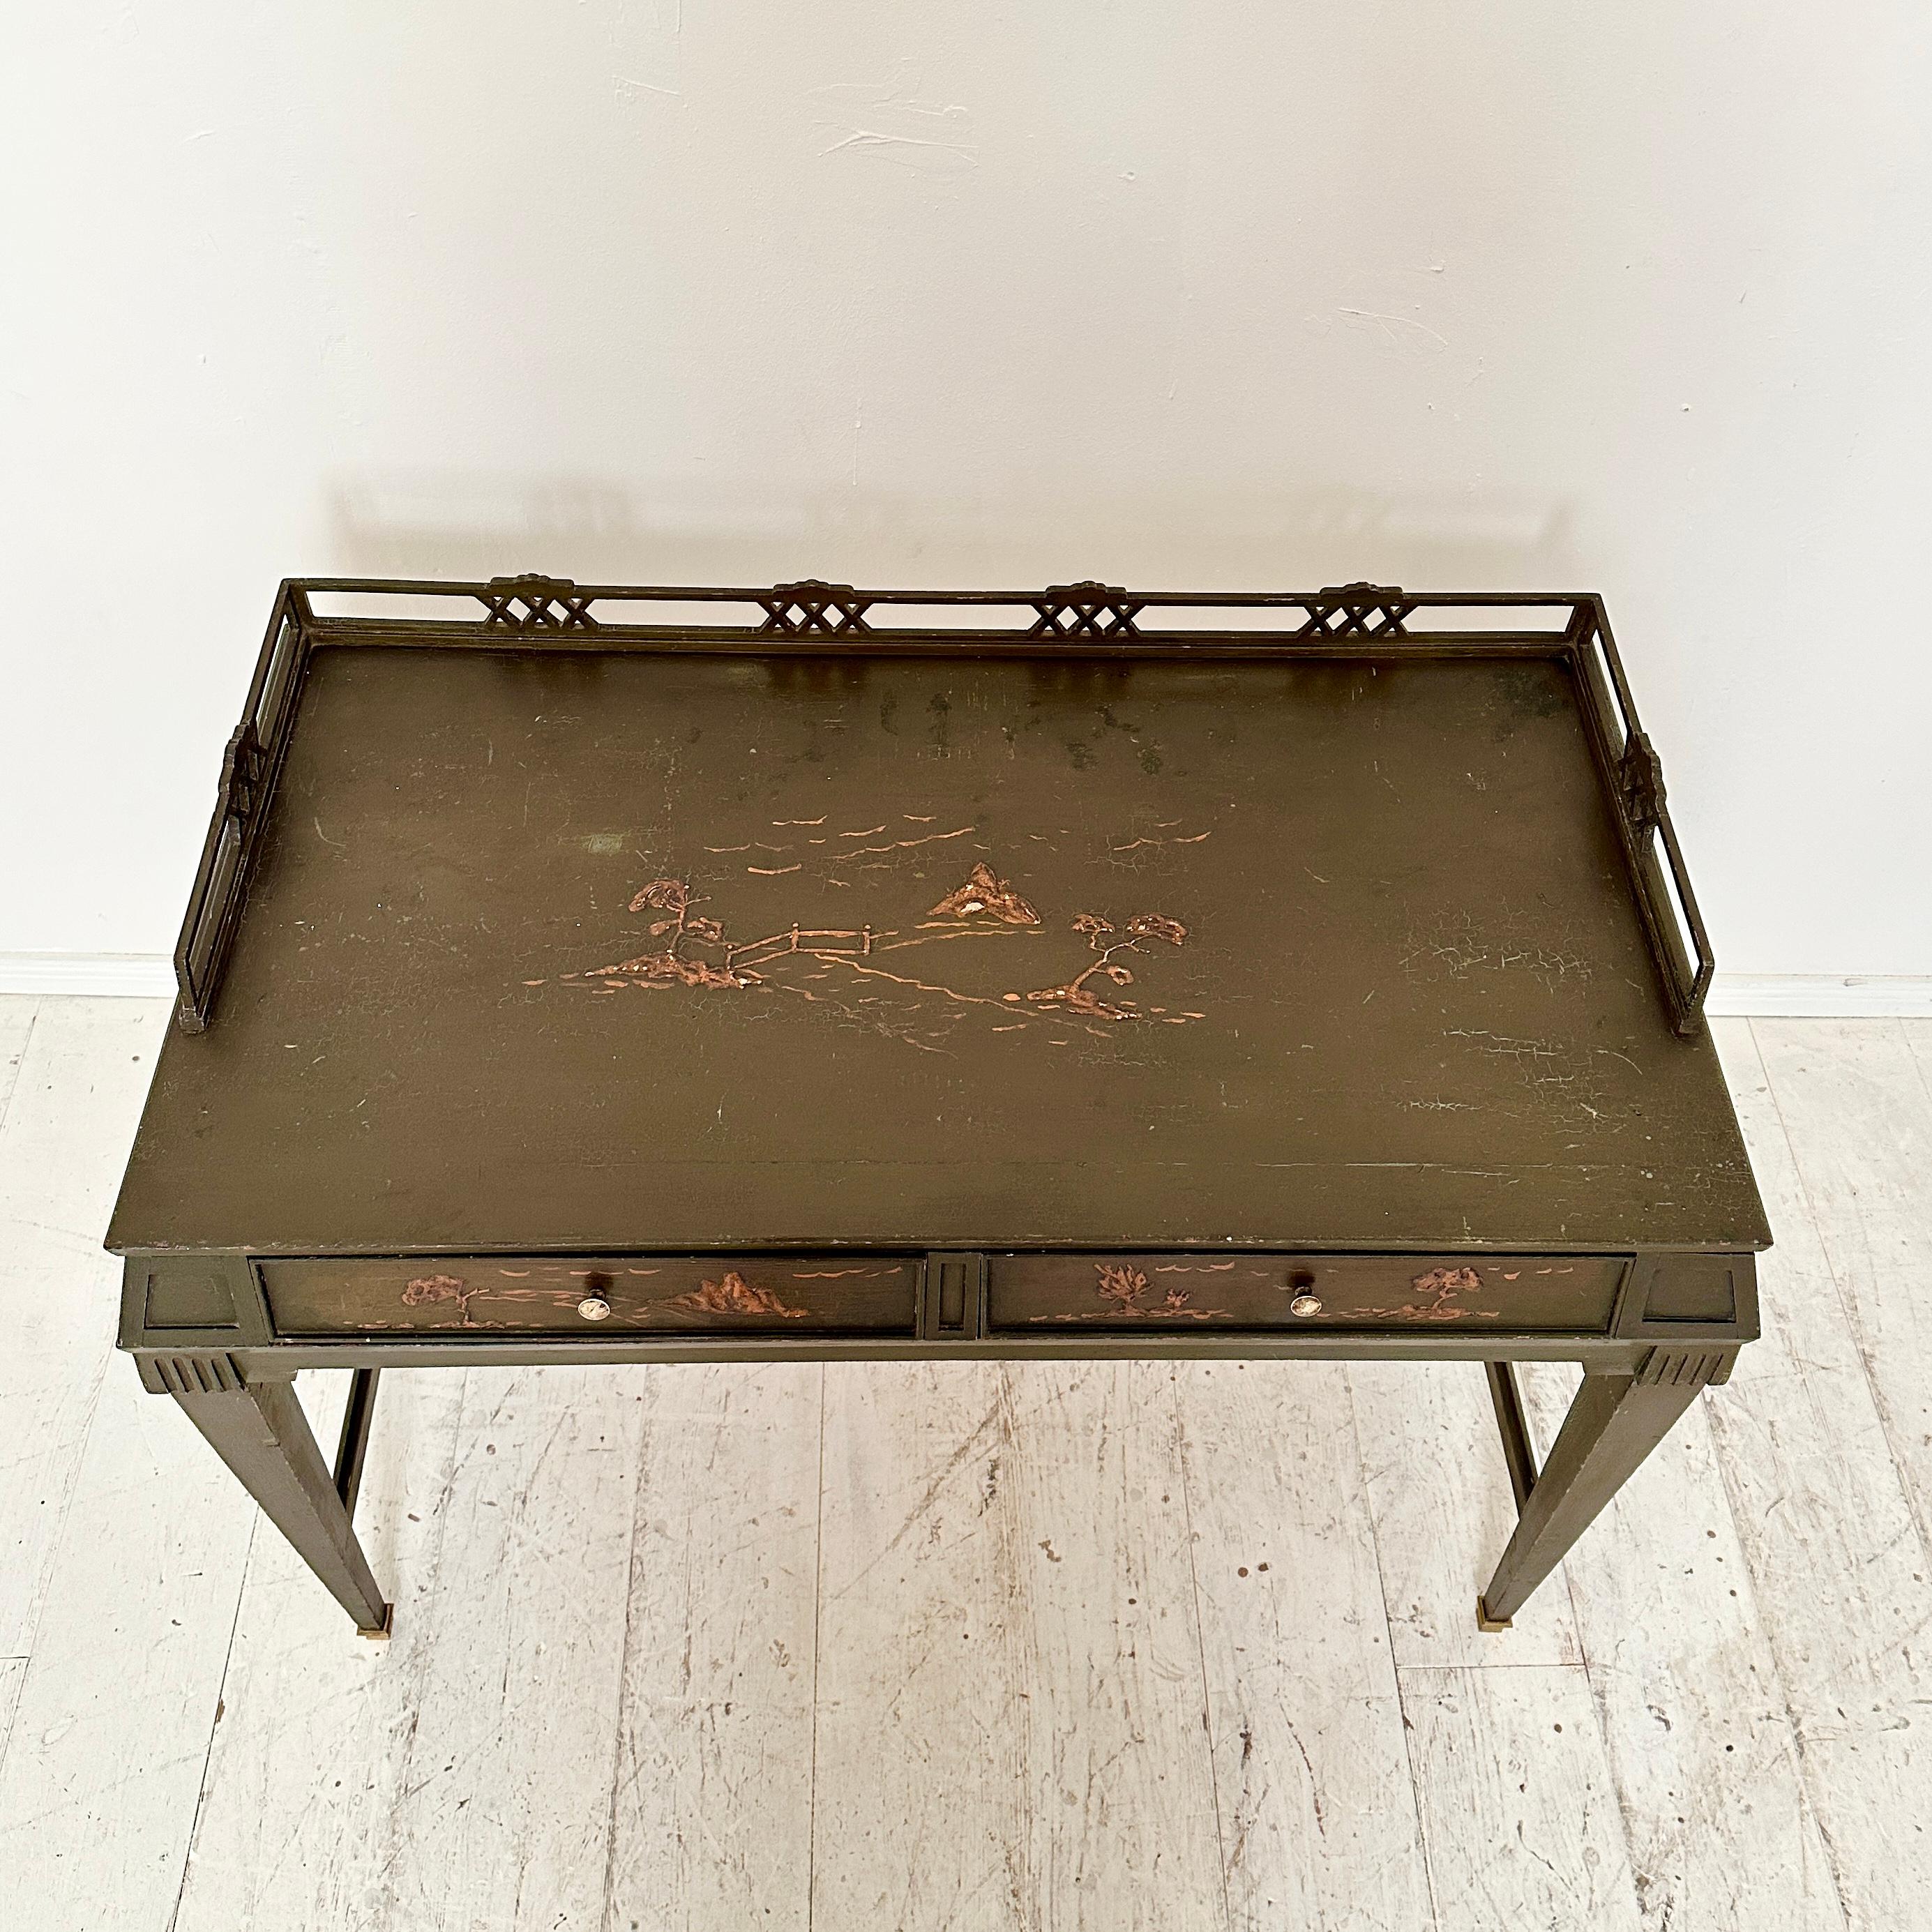 Grüner deutscher Art Deco Chinoiserie-Schreibtisch mit 2 Schubladen und konischen Beinen, 1920er Jahre (Frühes 20. Jahrhundert)